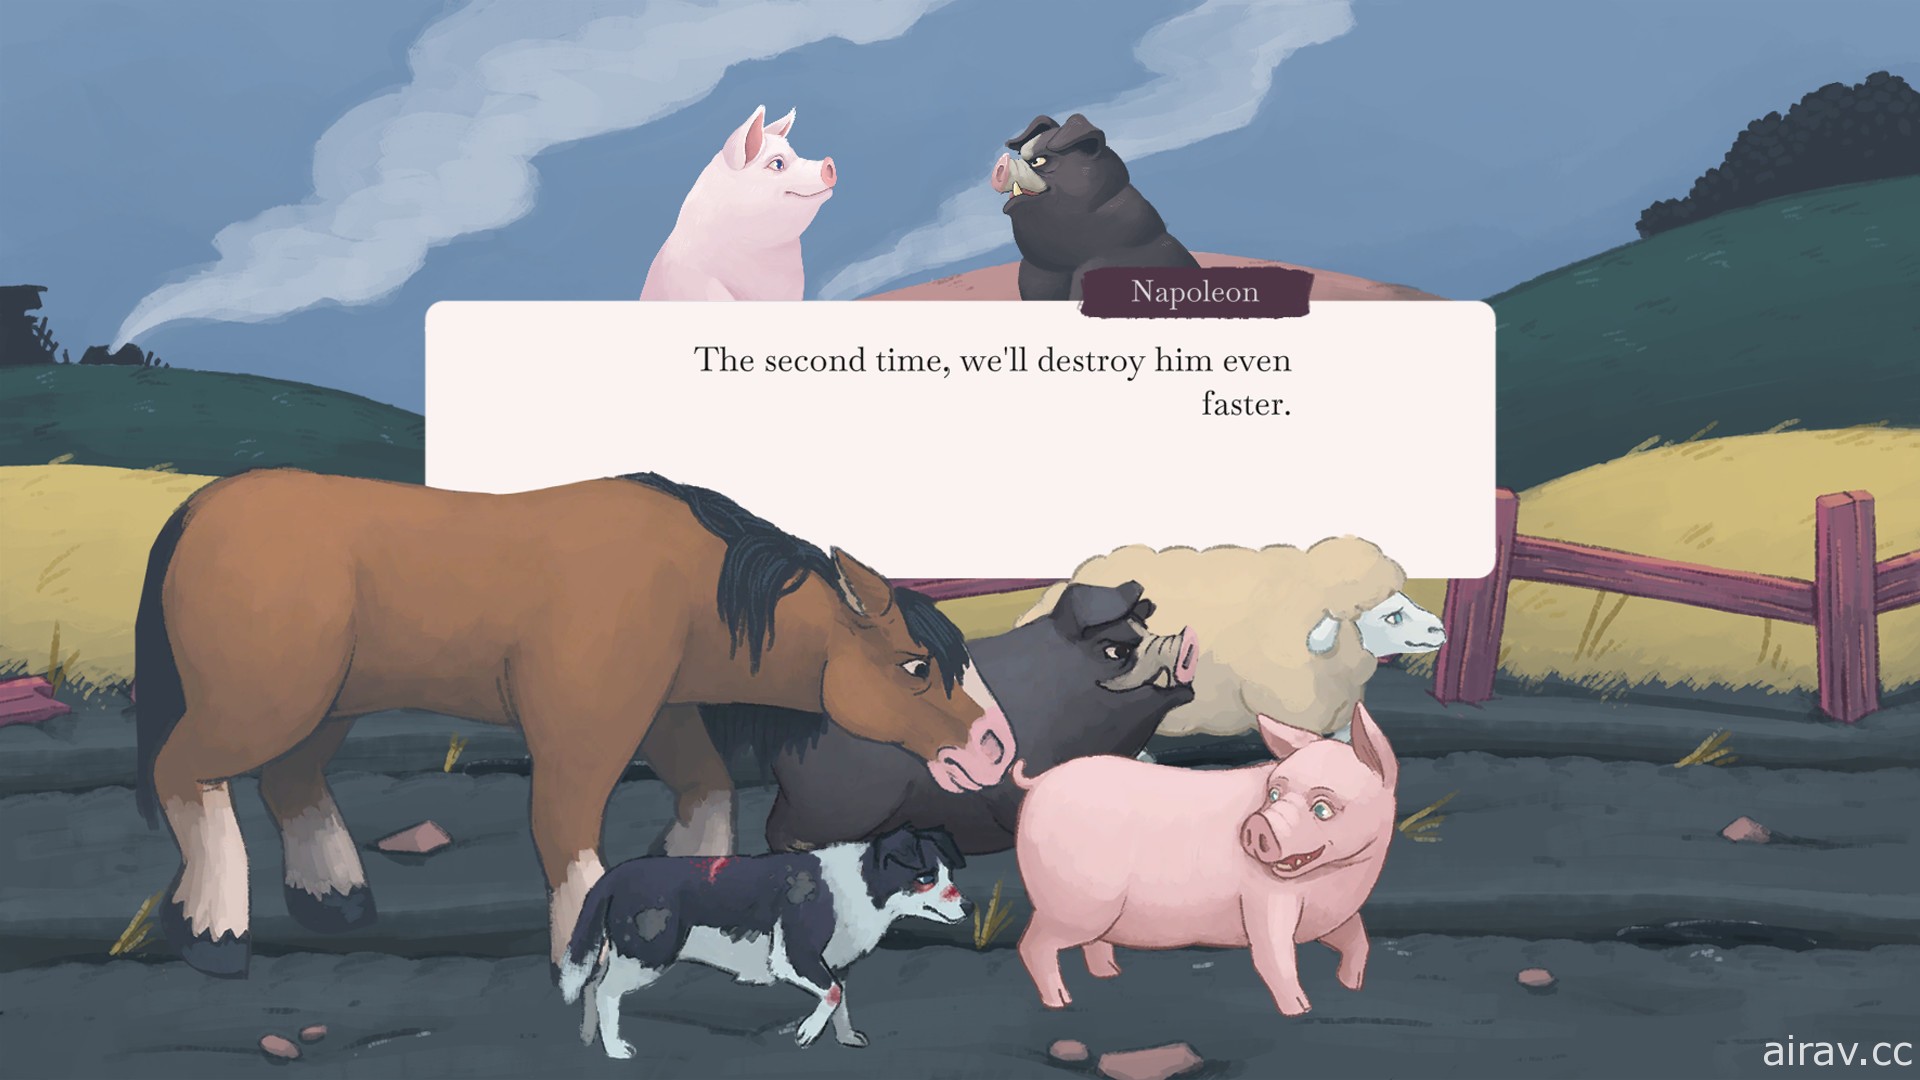 同名諷刺小說改編新作《歐威爾的動物農莊》預計 2020 秋季登陸 PC 與手機